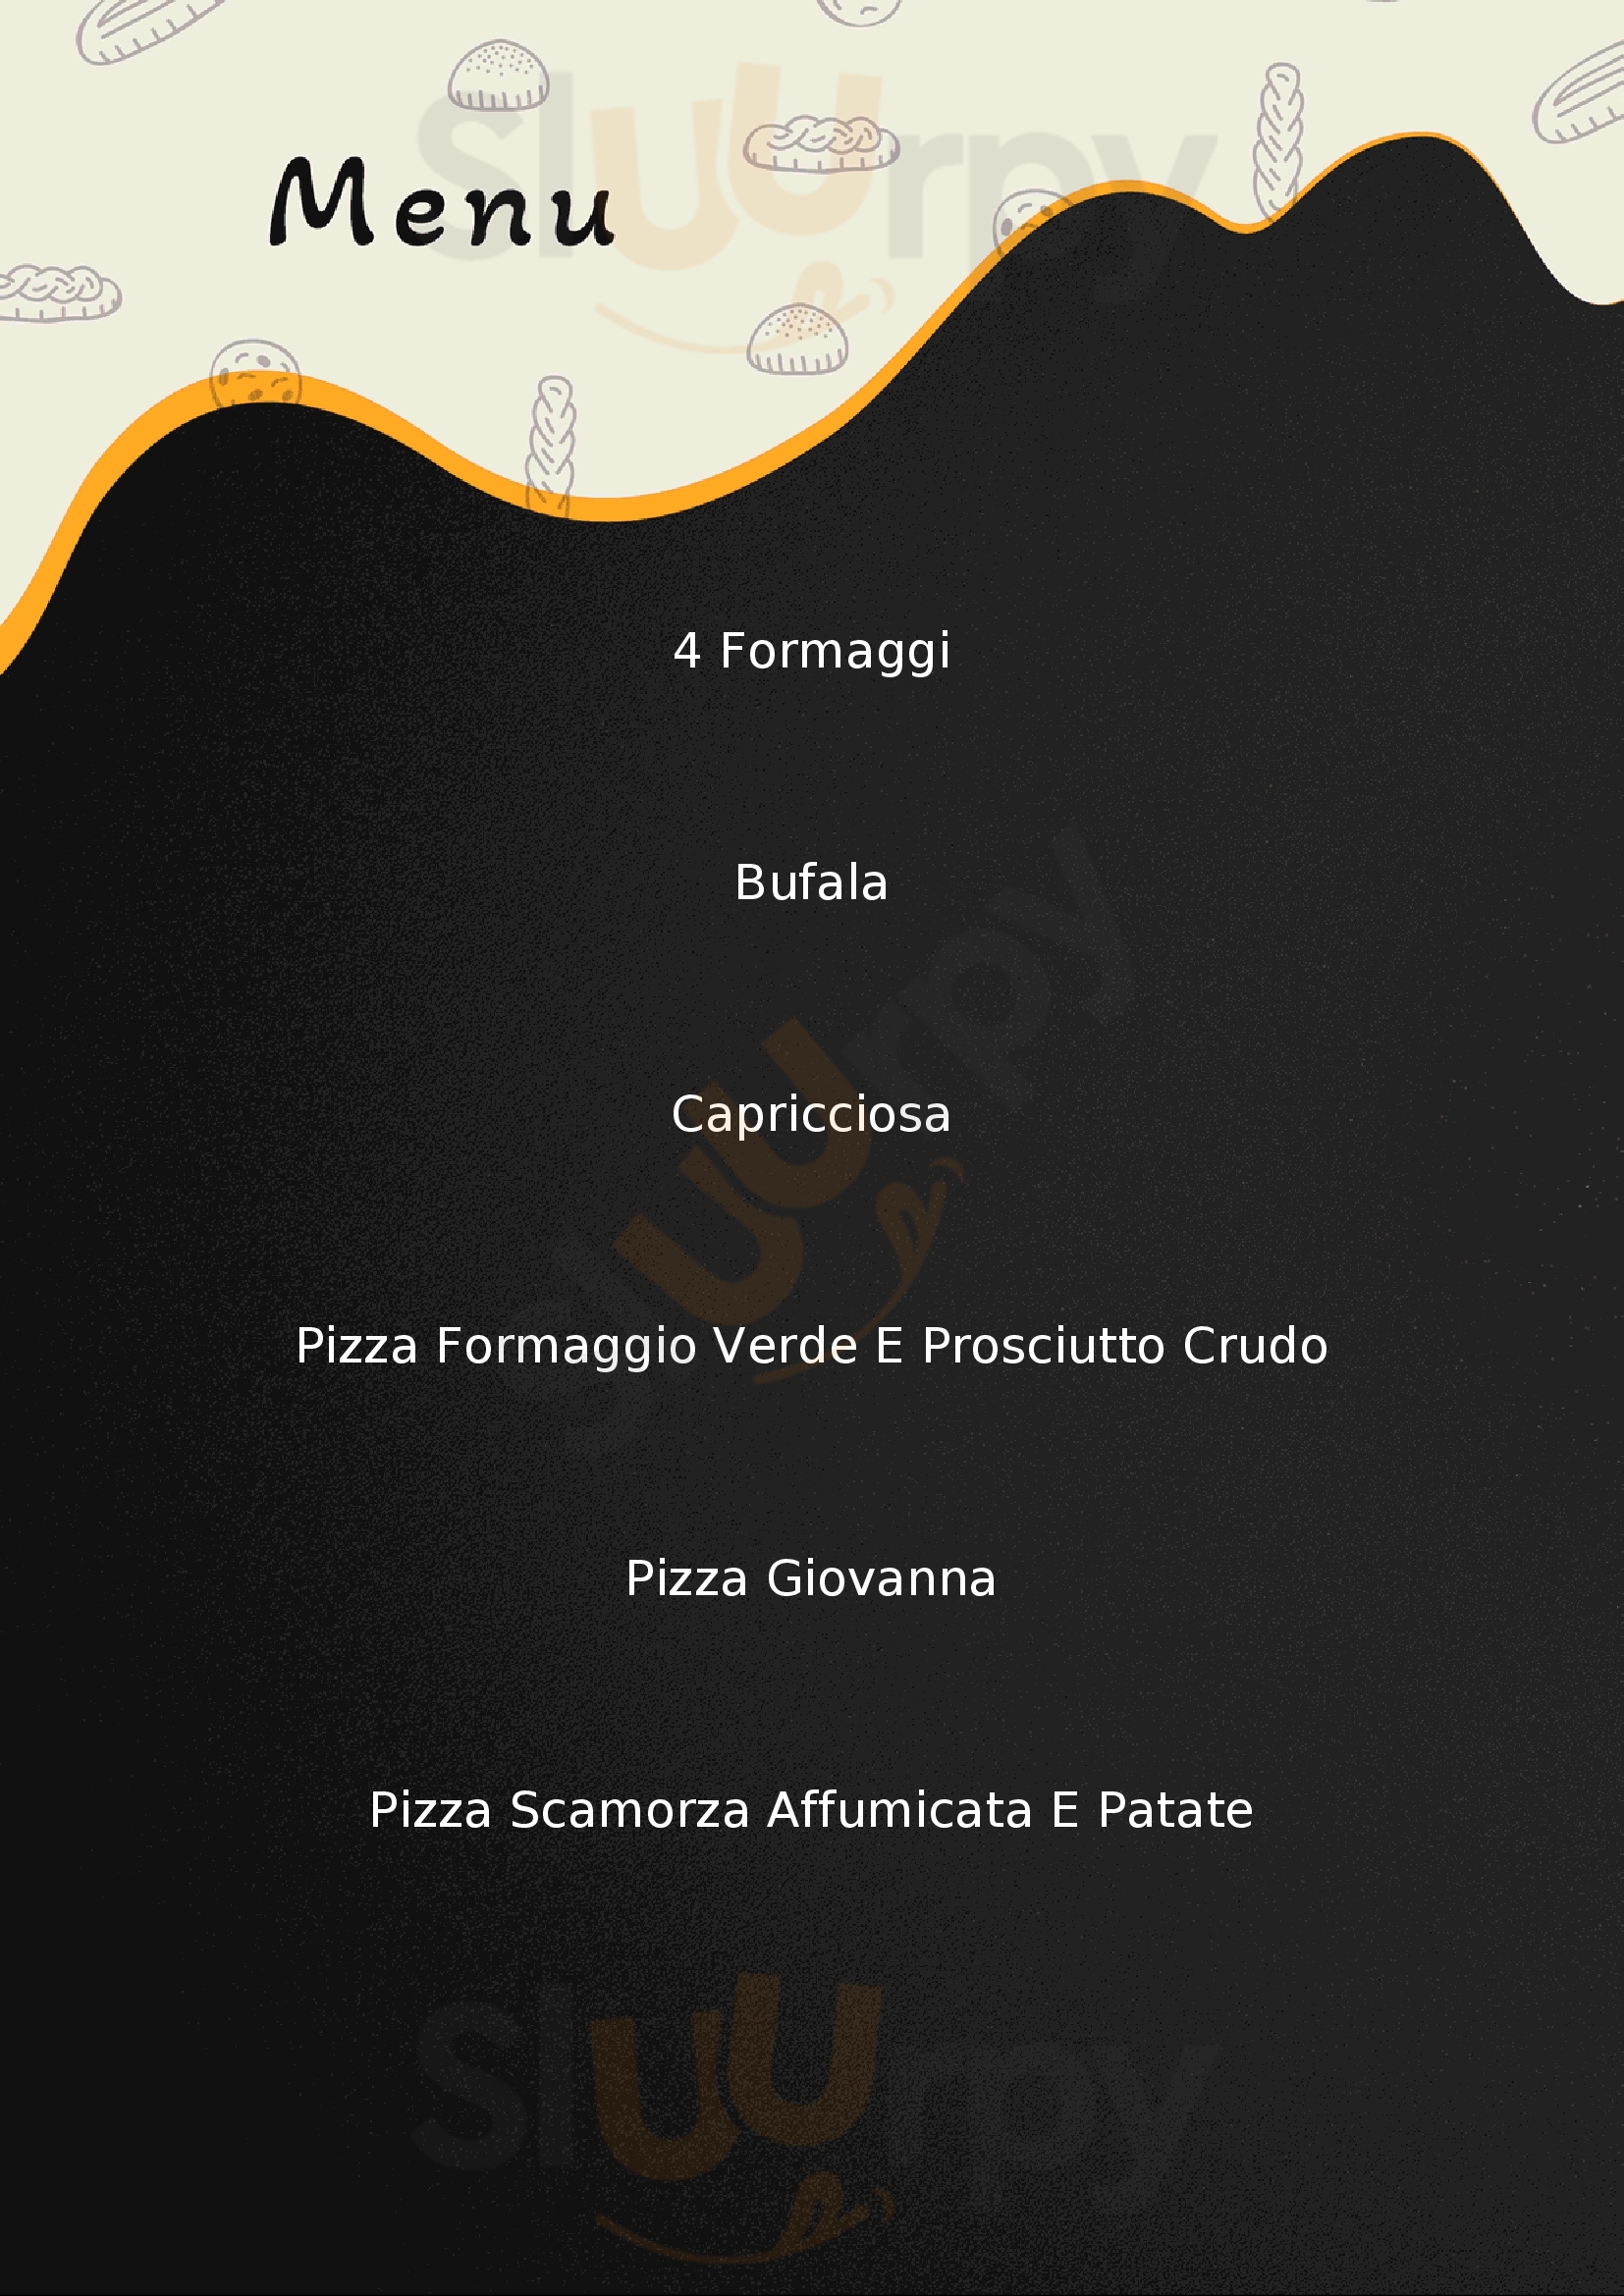 Trattoria Pizzeria Sartori Isola Rizza menù 1 pagina